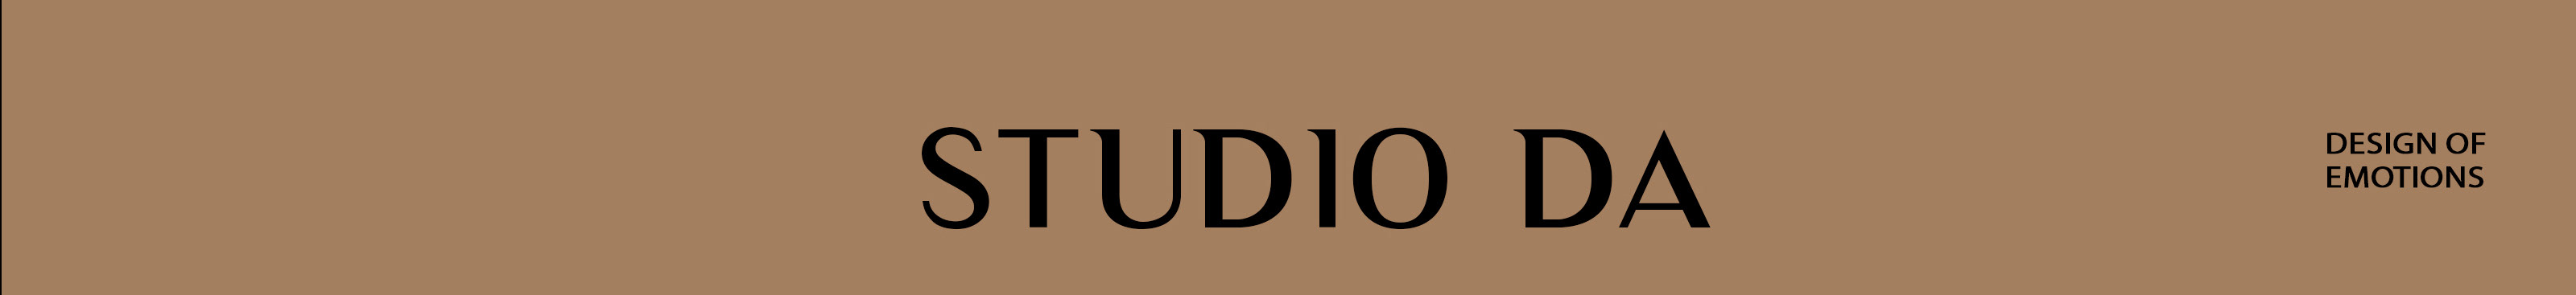 Studio DA's profile banner